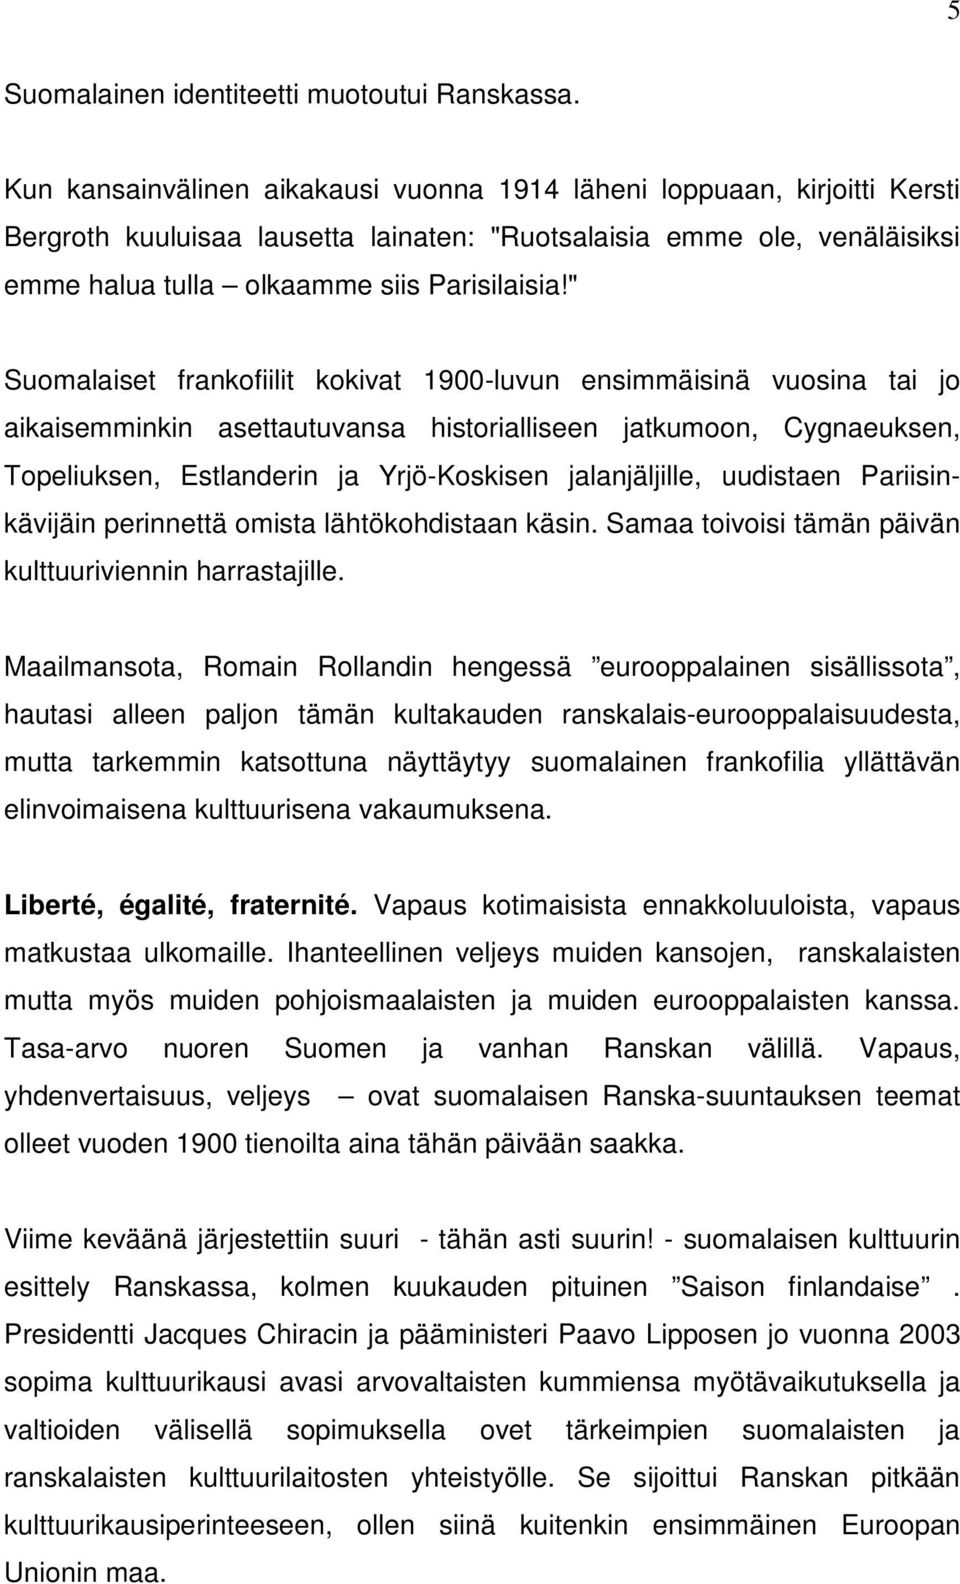 " Suomalaiset frankofiilit kokivat 1900-luvun ensimmäisinä vuosina tai jo aikaisemminkin asettautuvansa historialliseen jatkumoon, Cygnaeuksen, Topeliuksen, Estlanderin ja Yrjö-Koskisen